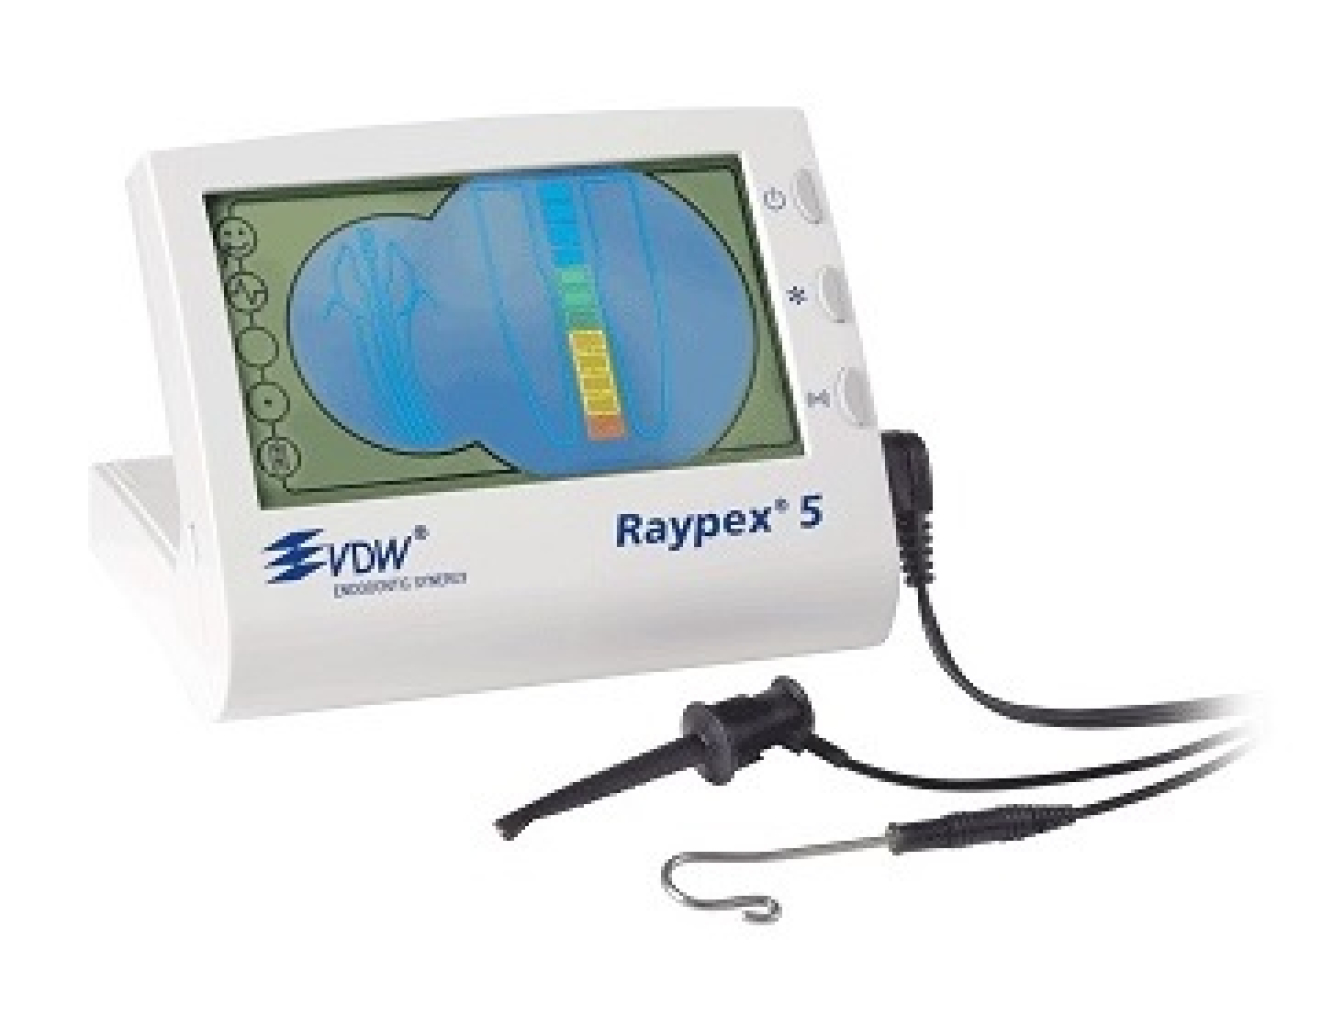 Апекслокатор стоматологический Райапекс 5 (Raypex 5), VDW GmbH (Германия)